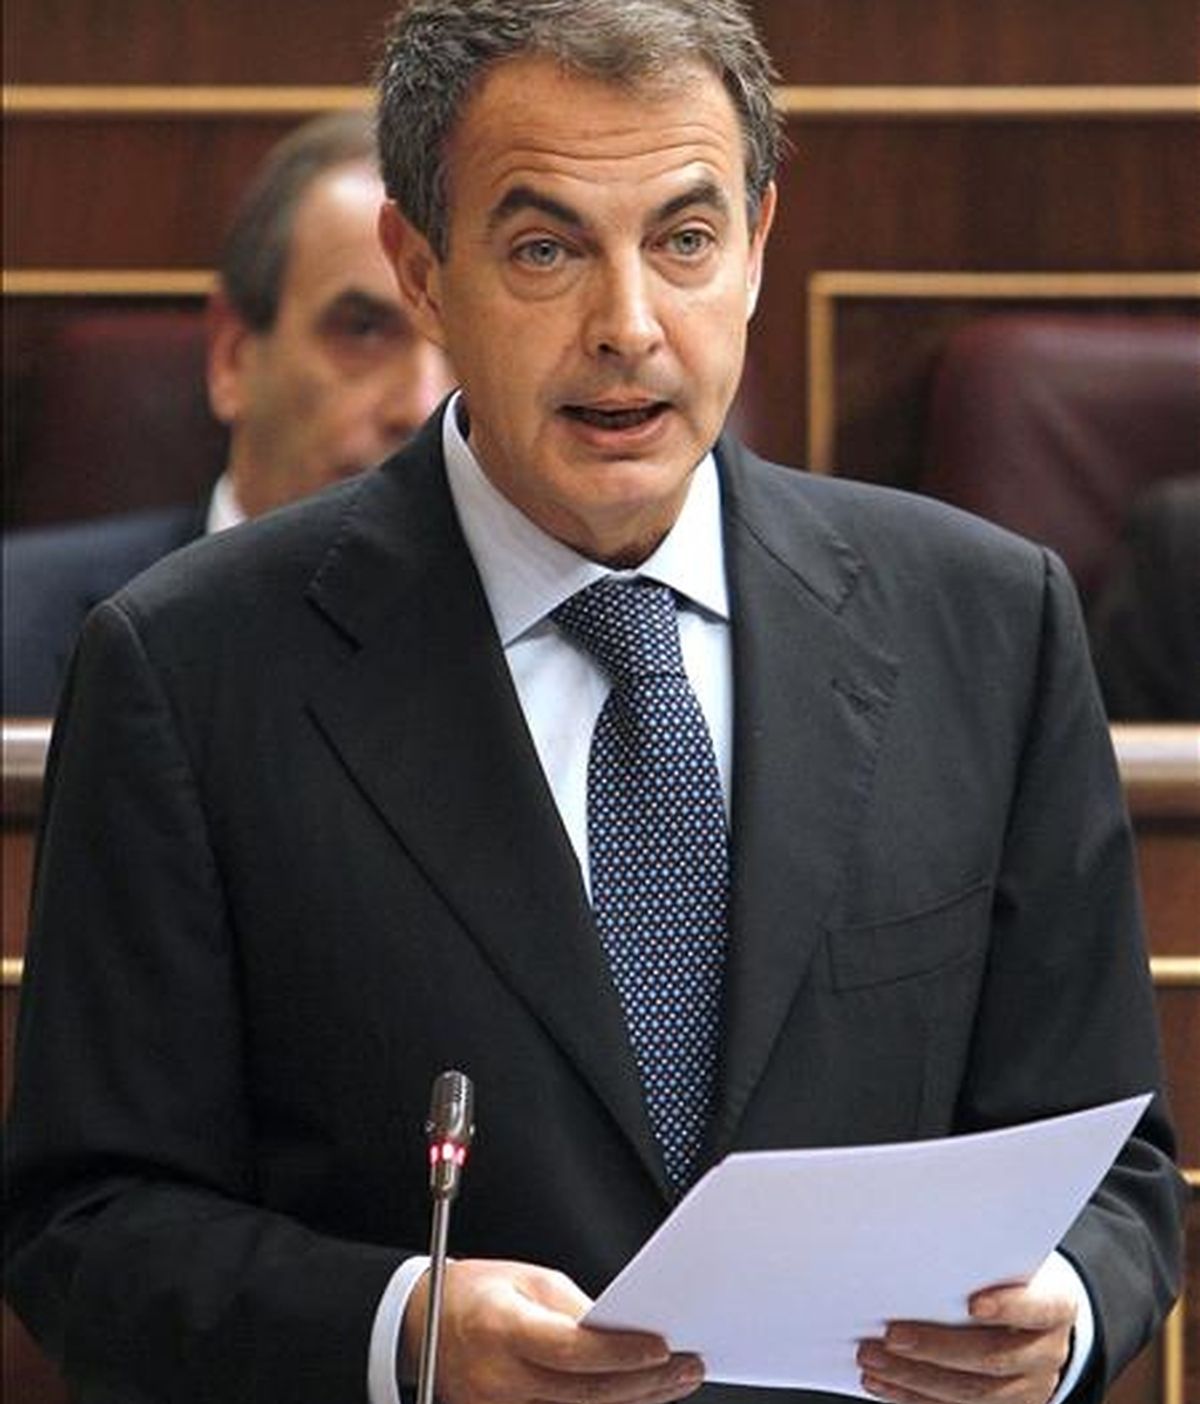 El presidente del Gobierno, José Luis Rodríguez Zapatero, durante su intervención en la sesión de control al Ejecutivo celebrada hoy en el Congreso de los Diputados. EFE